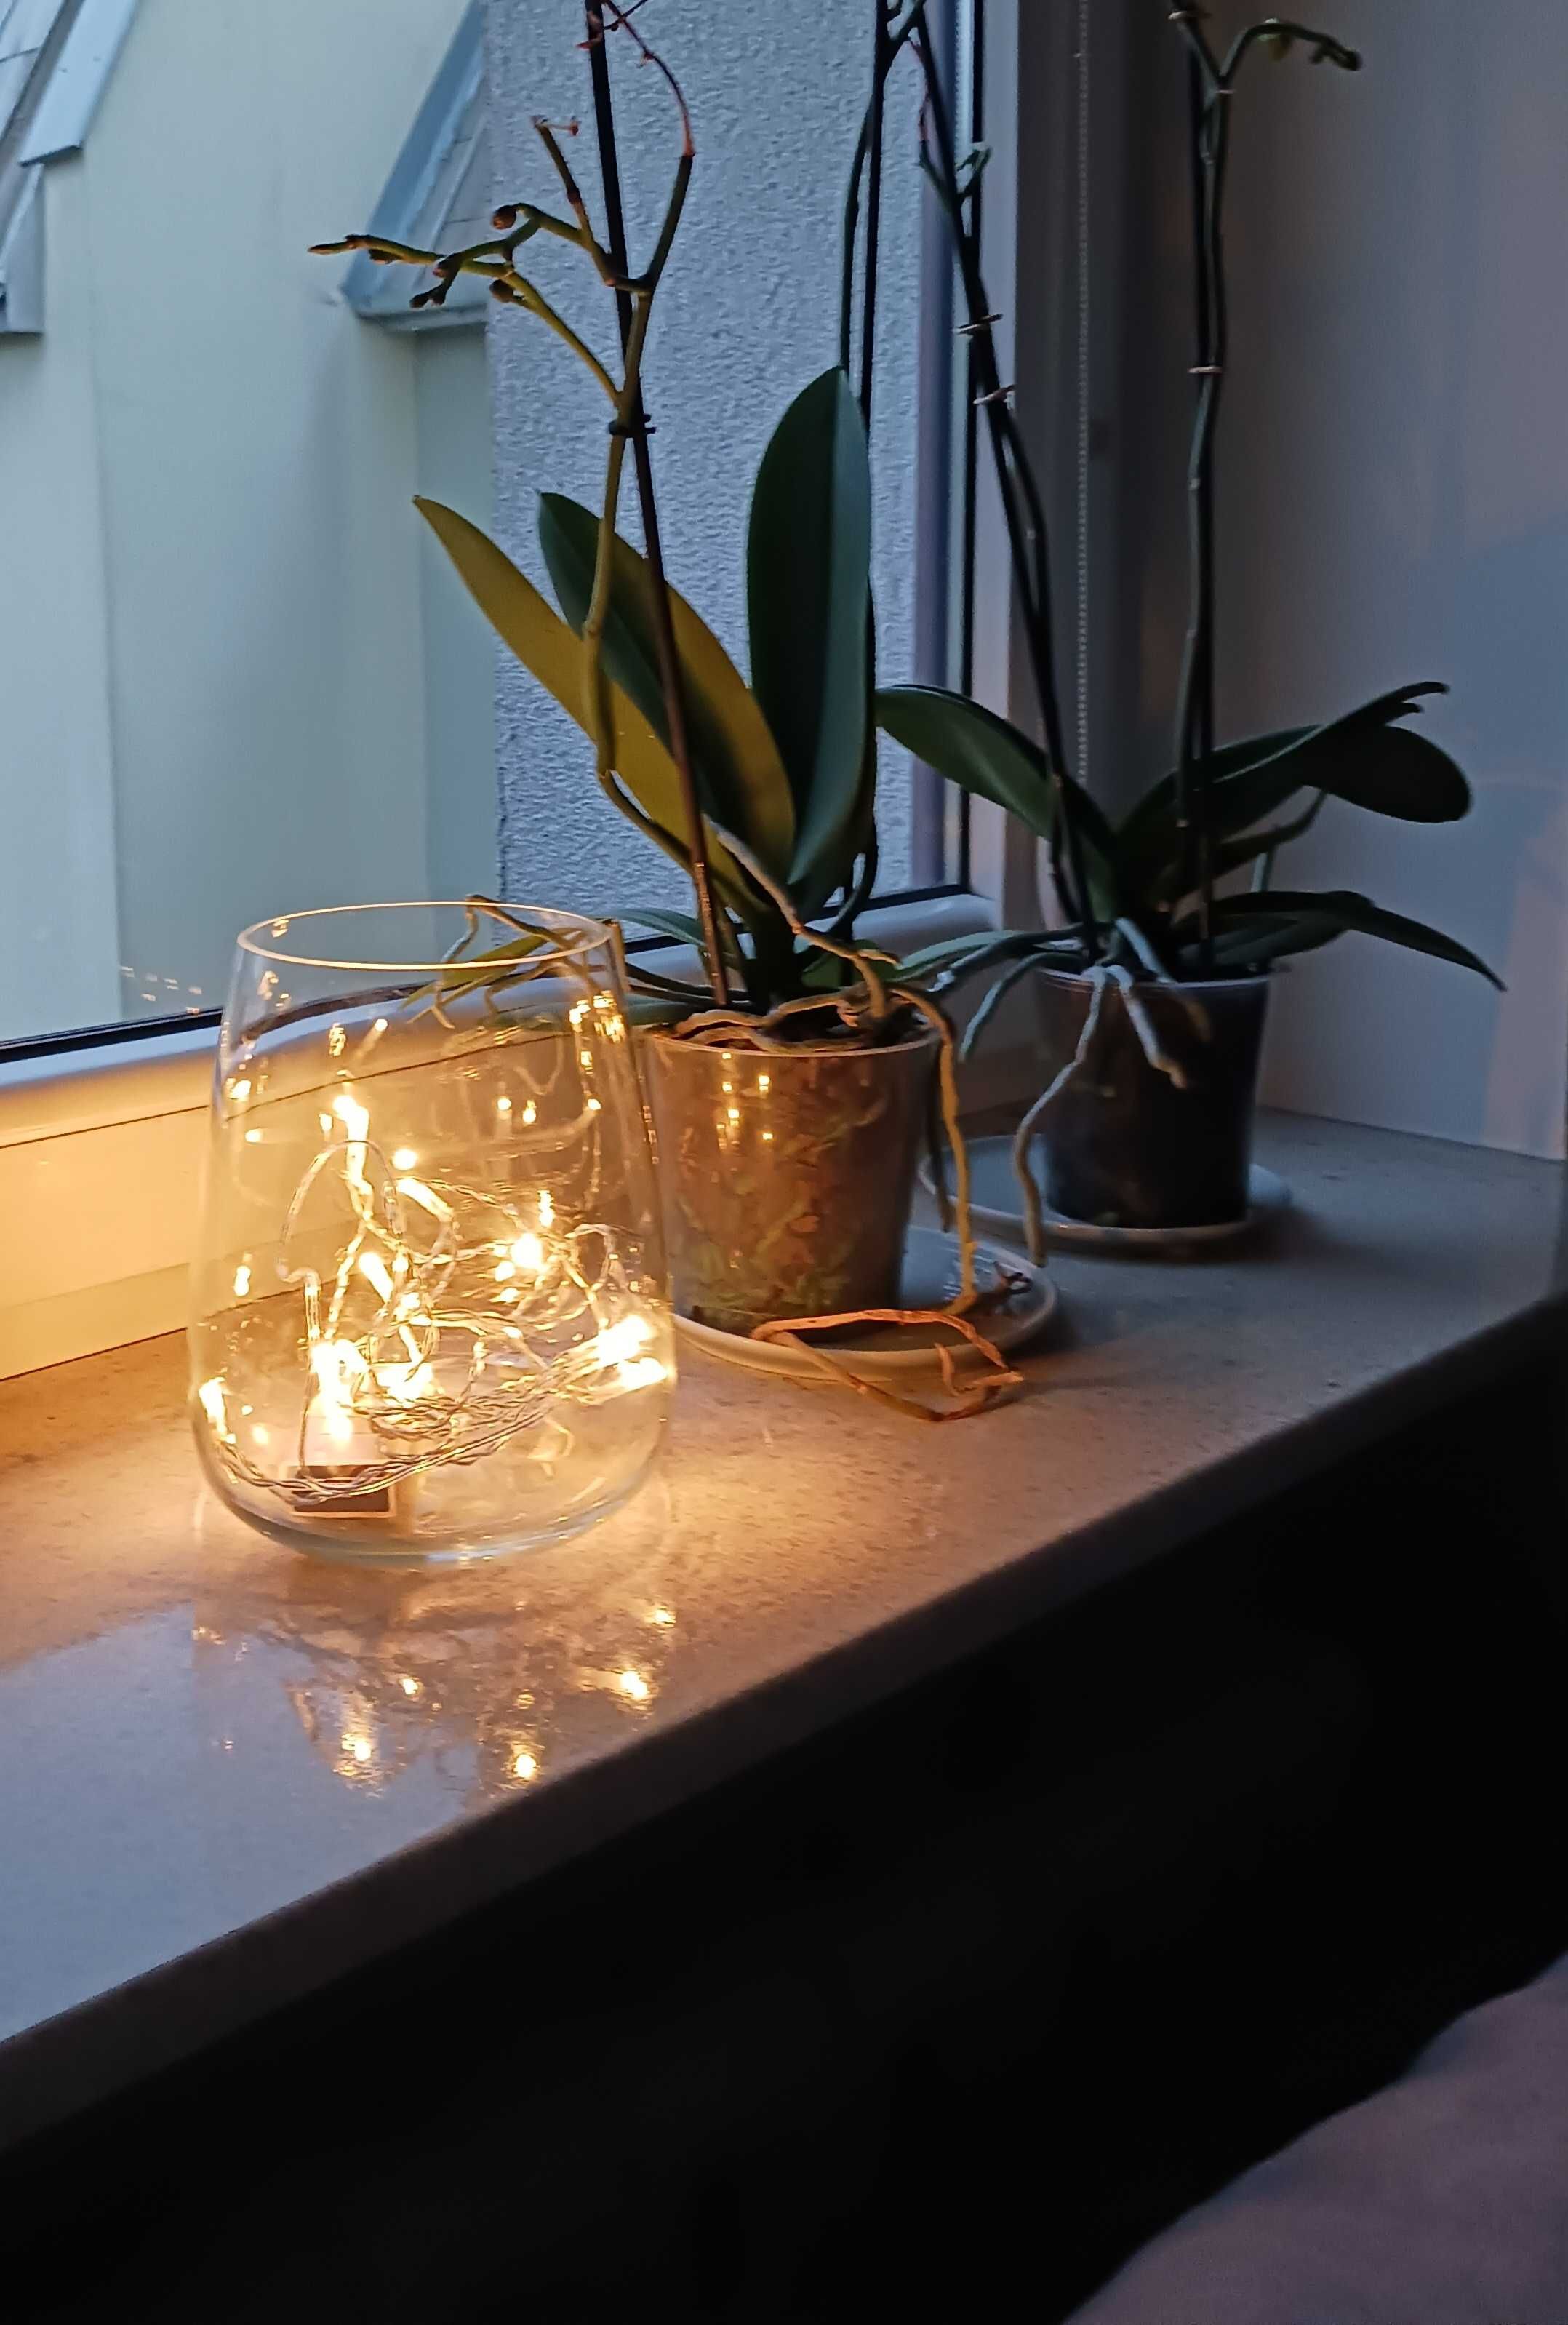 Lampki IKEA i szklany wazon